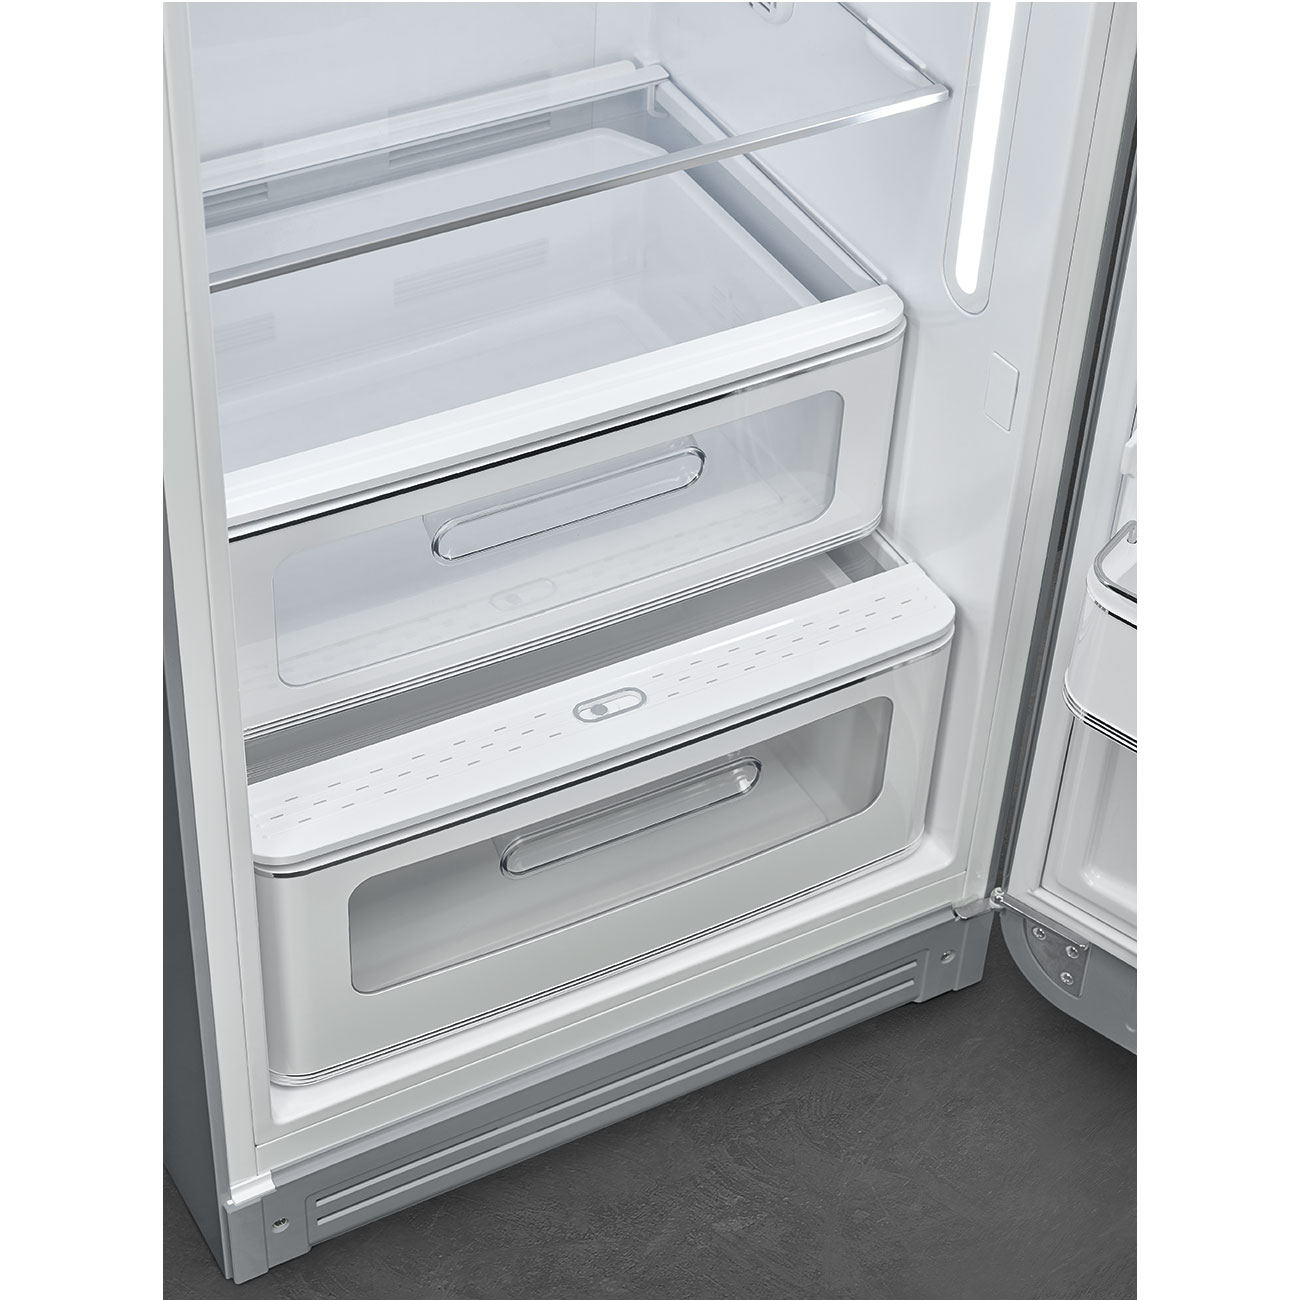 Silber Retro-Kühlschränke von Smeg_5